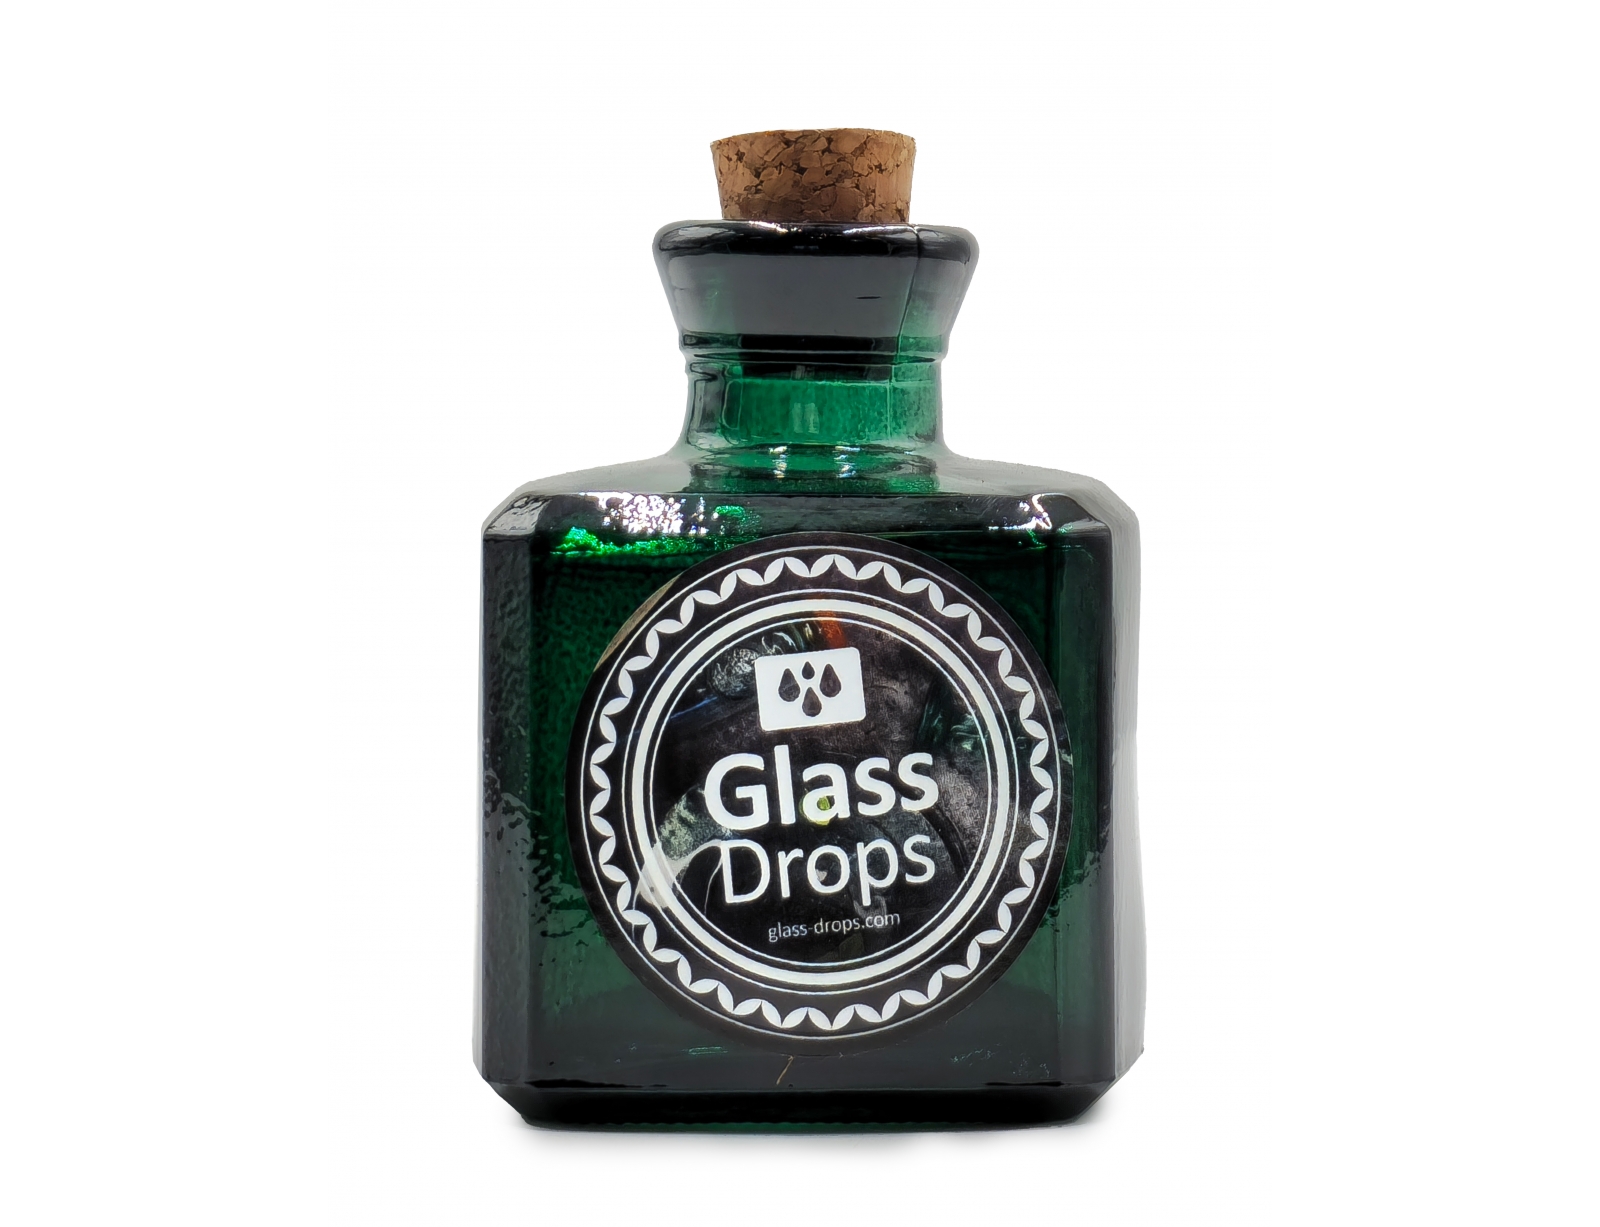 Εικόνα Διακοσμητικό Μπουκάλι με πώμα Glass Drops Cuadrada (5322DB734) Aπό 100% ανακυκλωμένο γυαλί, Xωρητικότητας 200ml, Διαστάσεων Ø 7 x Υ 10 cm, Αlbahaca